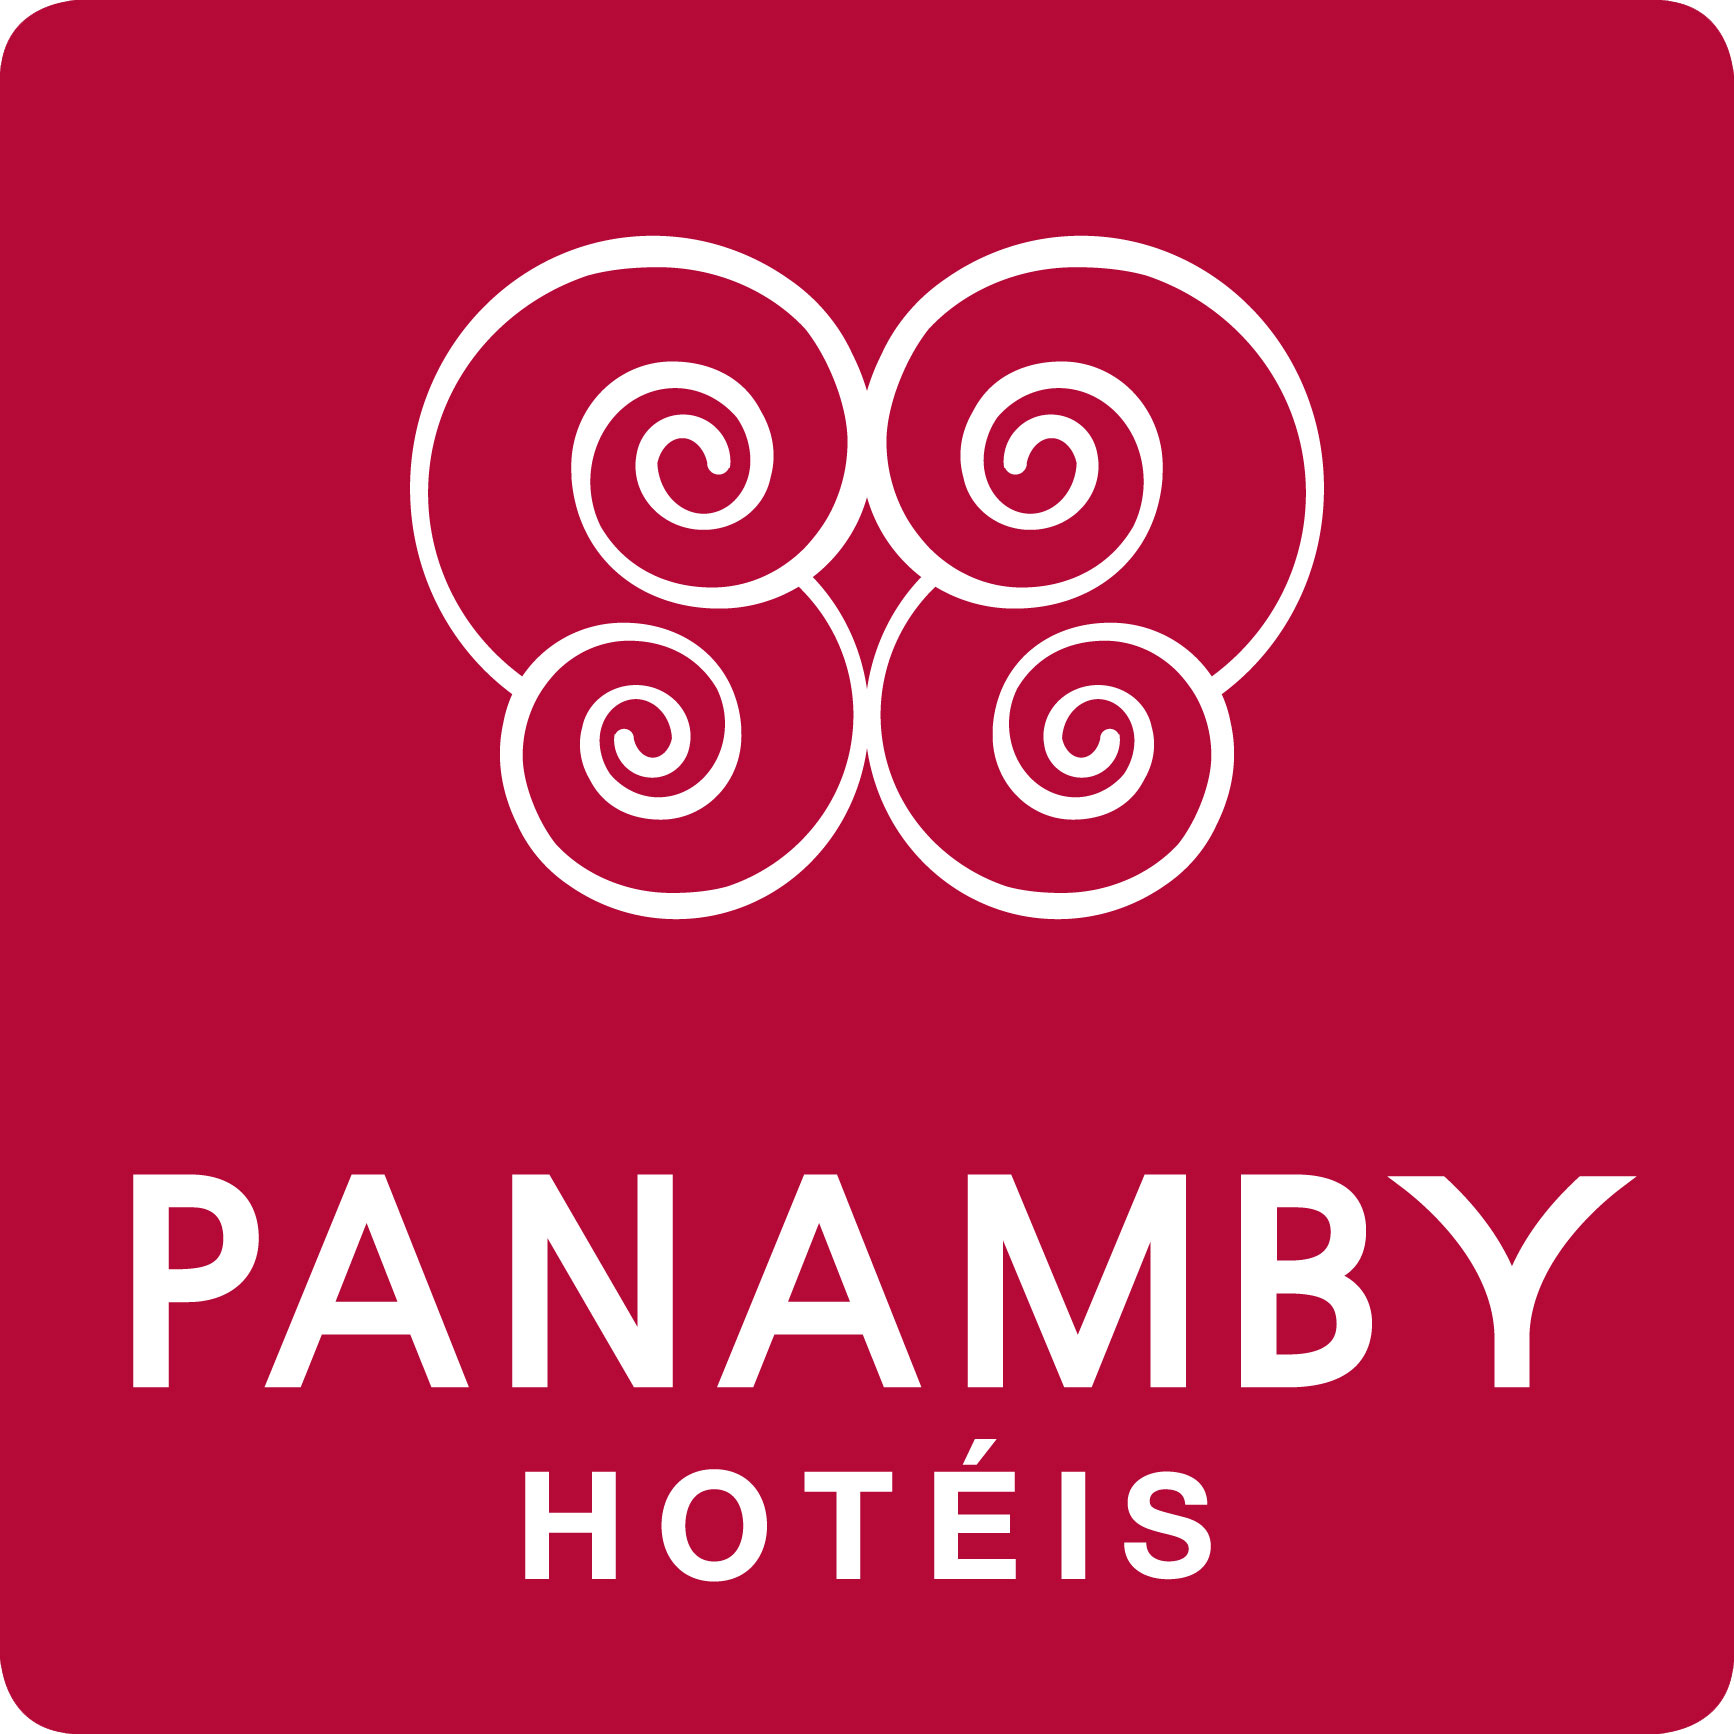 PANAMBY_HOTEIS.jpg